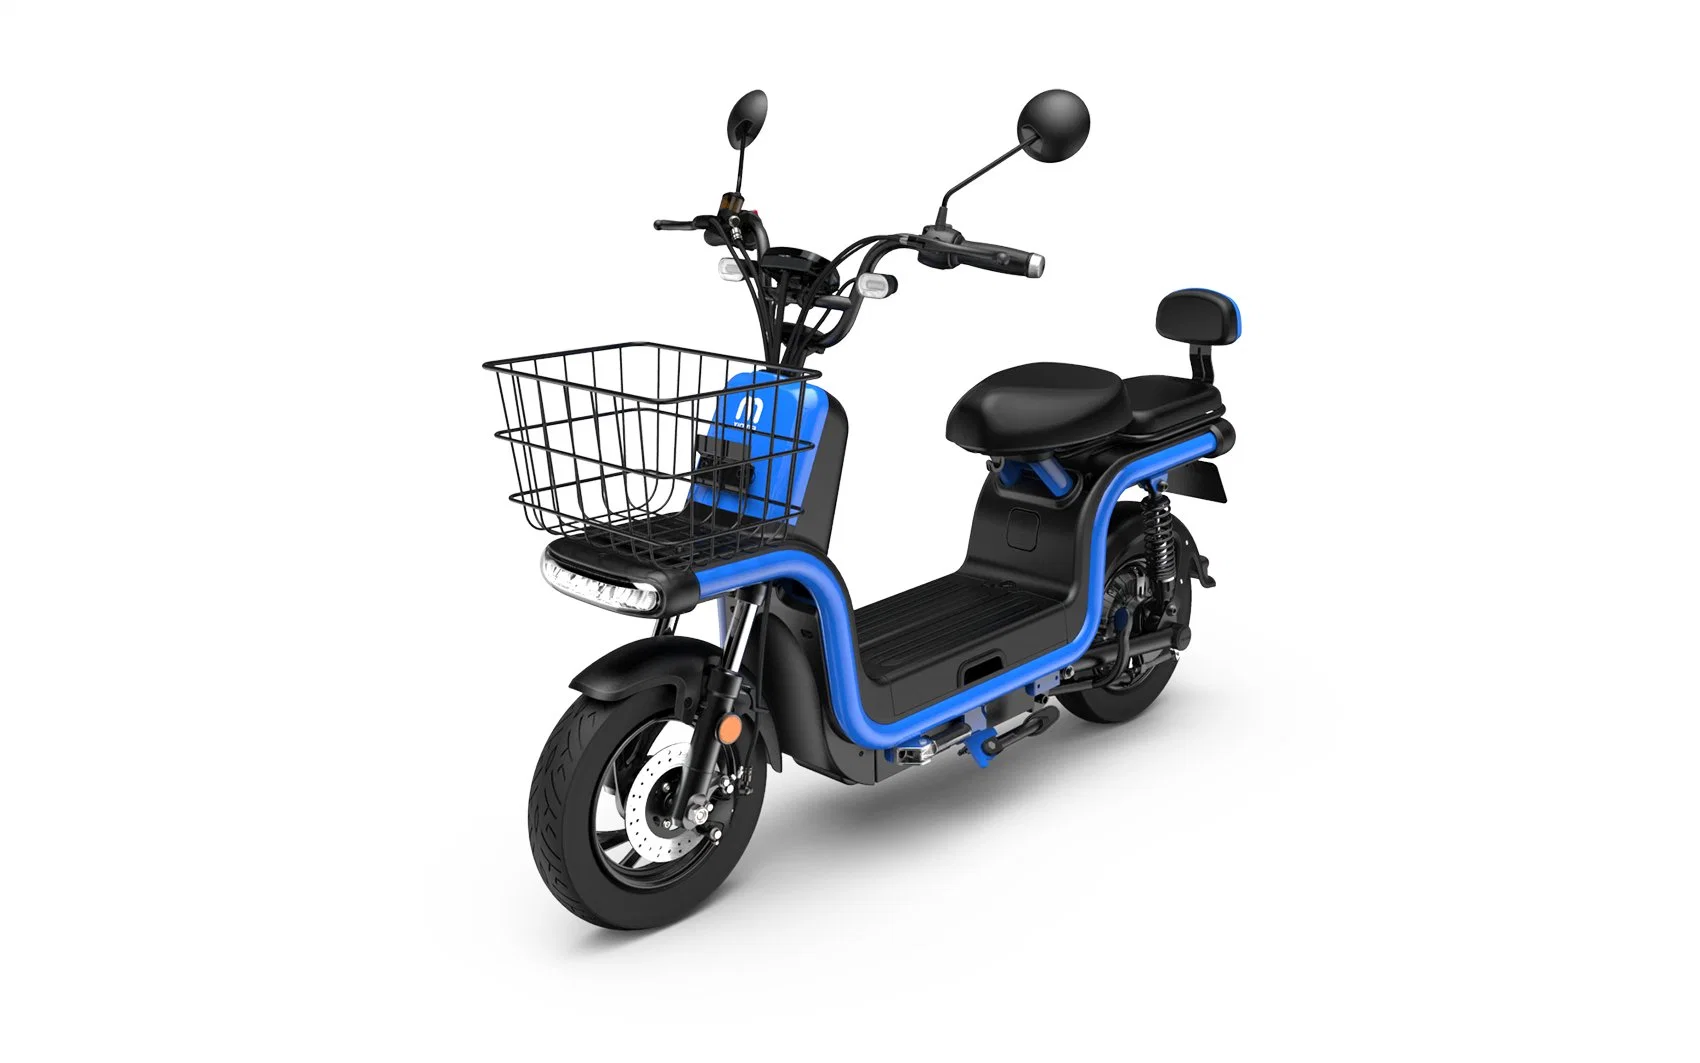 Scooter de carga eléctrico de alta velocidad Velocidad máxima superior a 60 km/h Motor de 1500W con batería de plomo ácido/litio